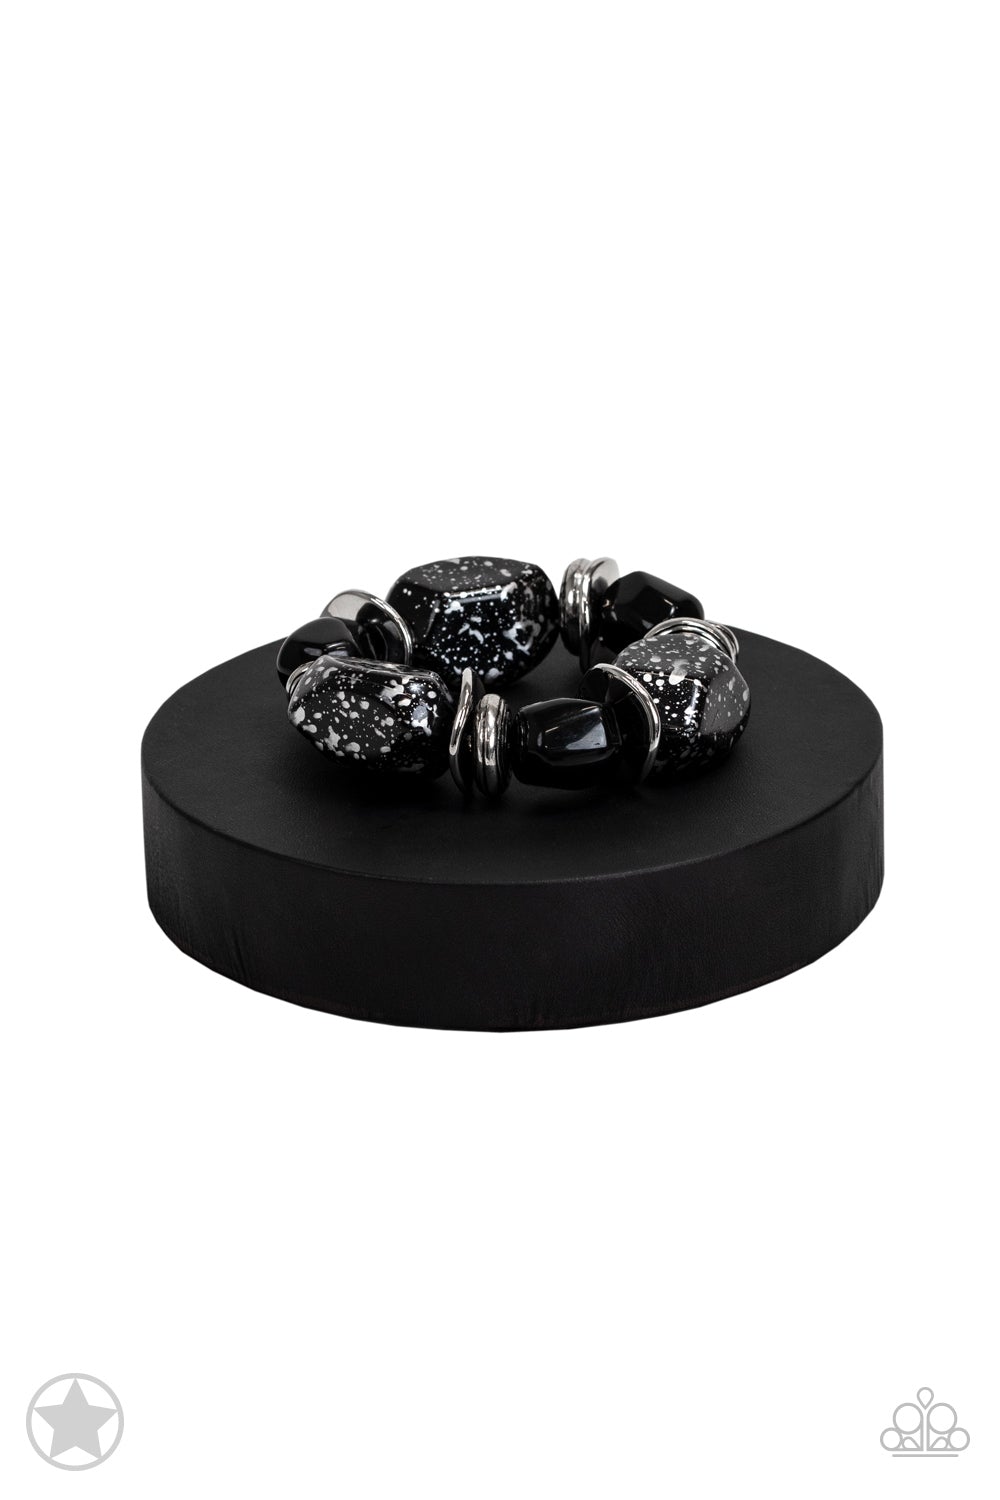 Glaze of Glory Black Chunky Bead Stretch Bracelet - Paparazzi Accessories- on bust -CarasShop.com - $5 Jewelry by Cara Jewels